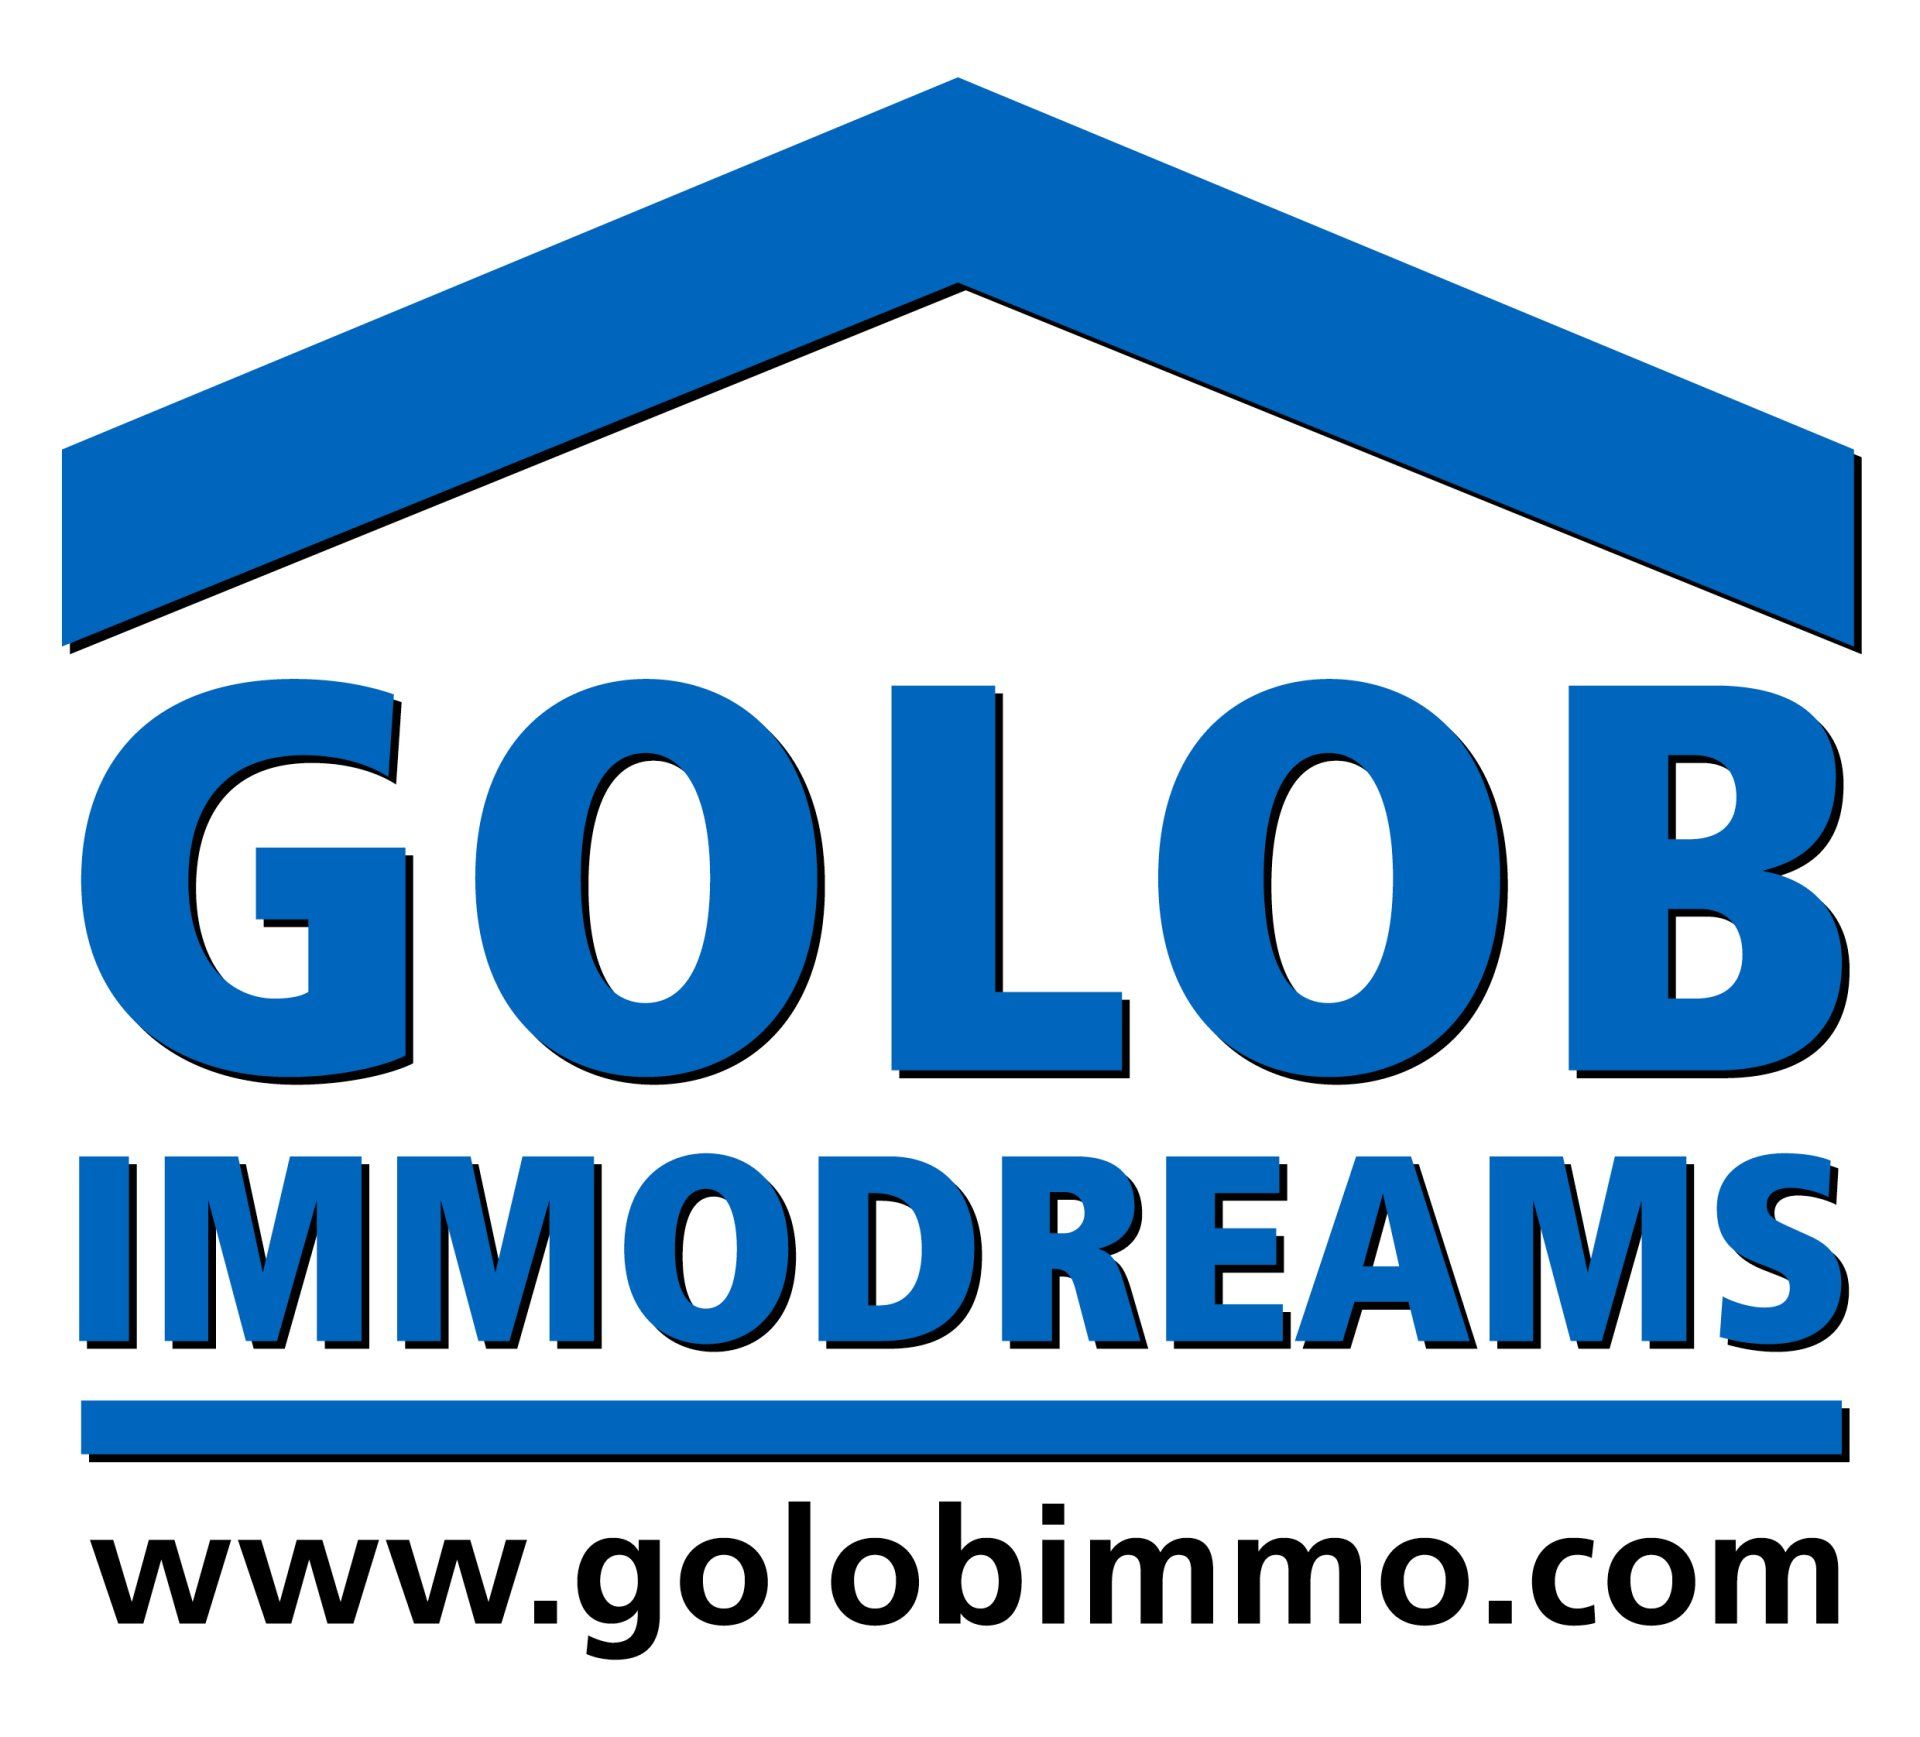 (c) Golobimmo.com